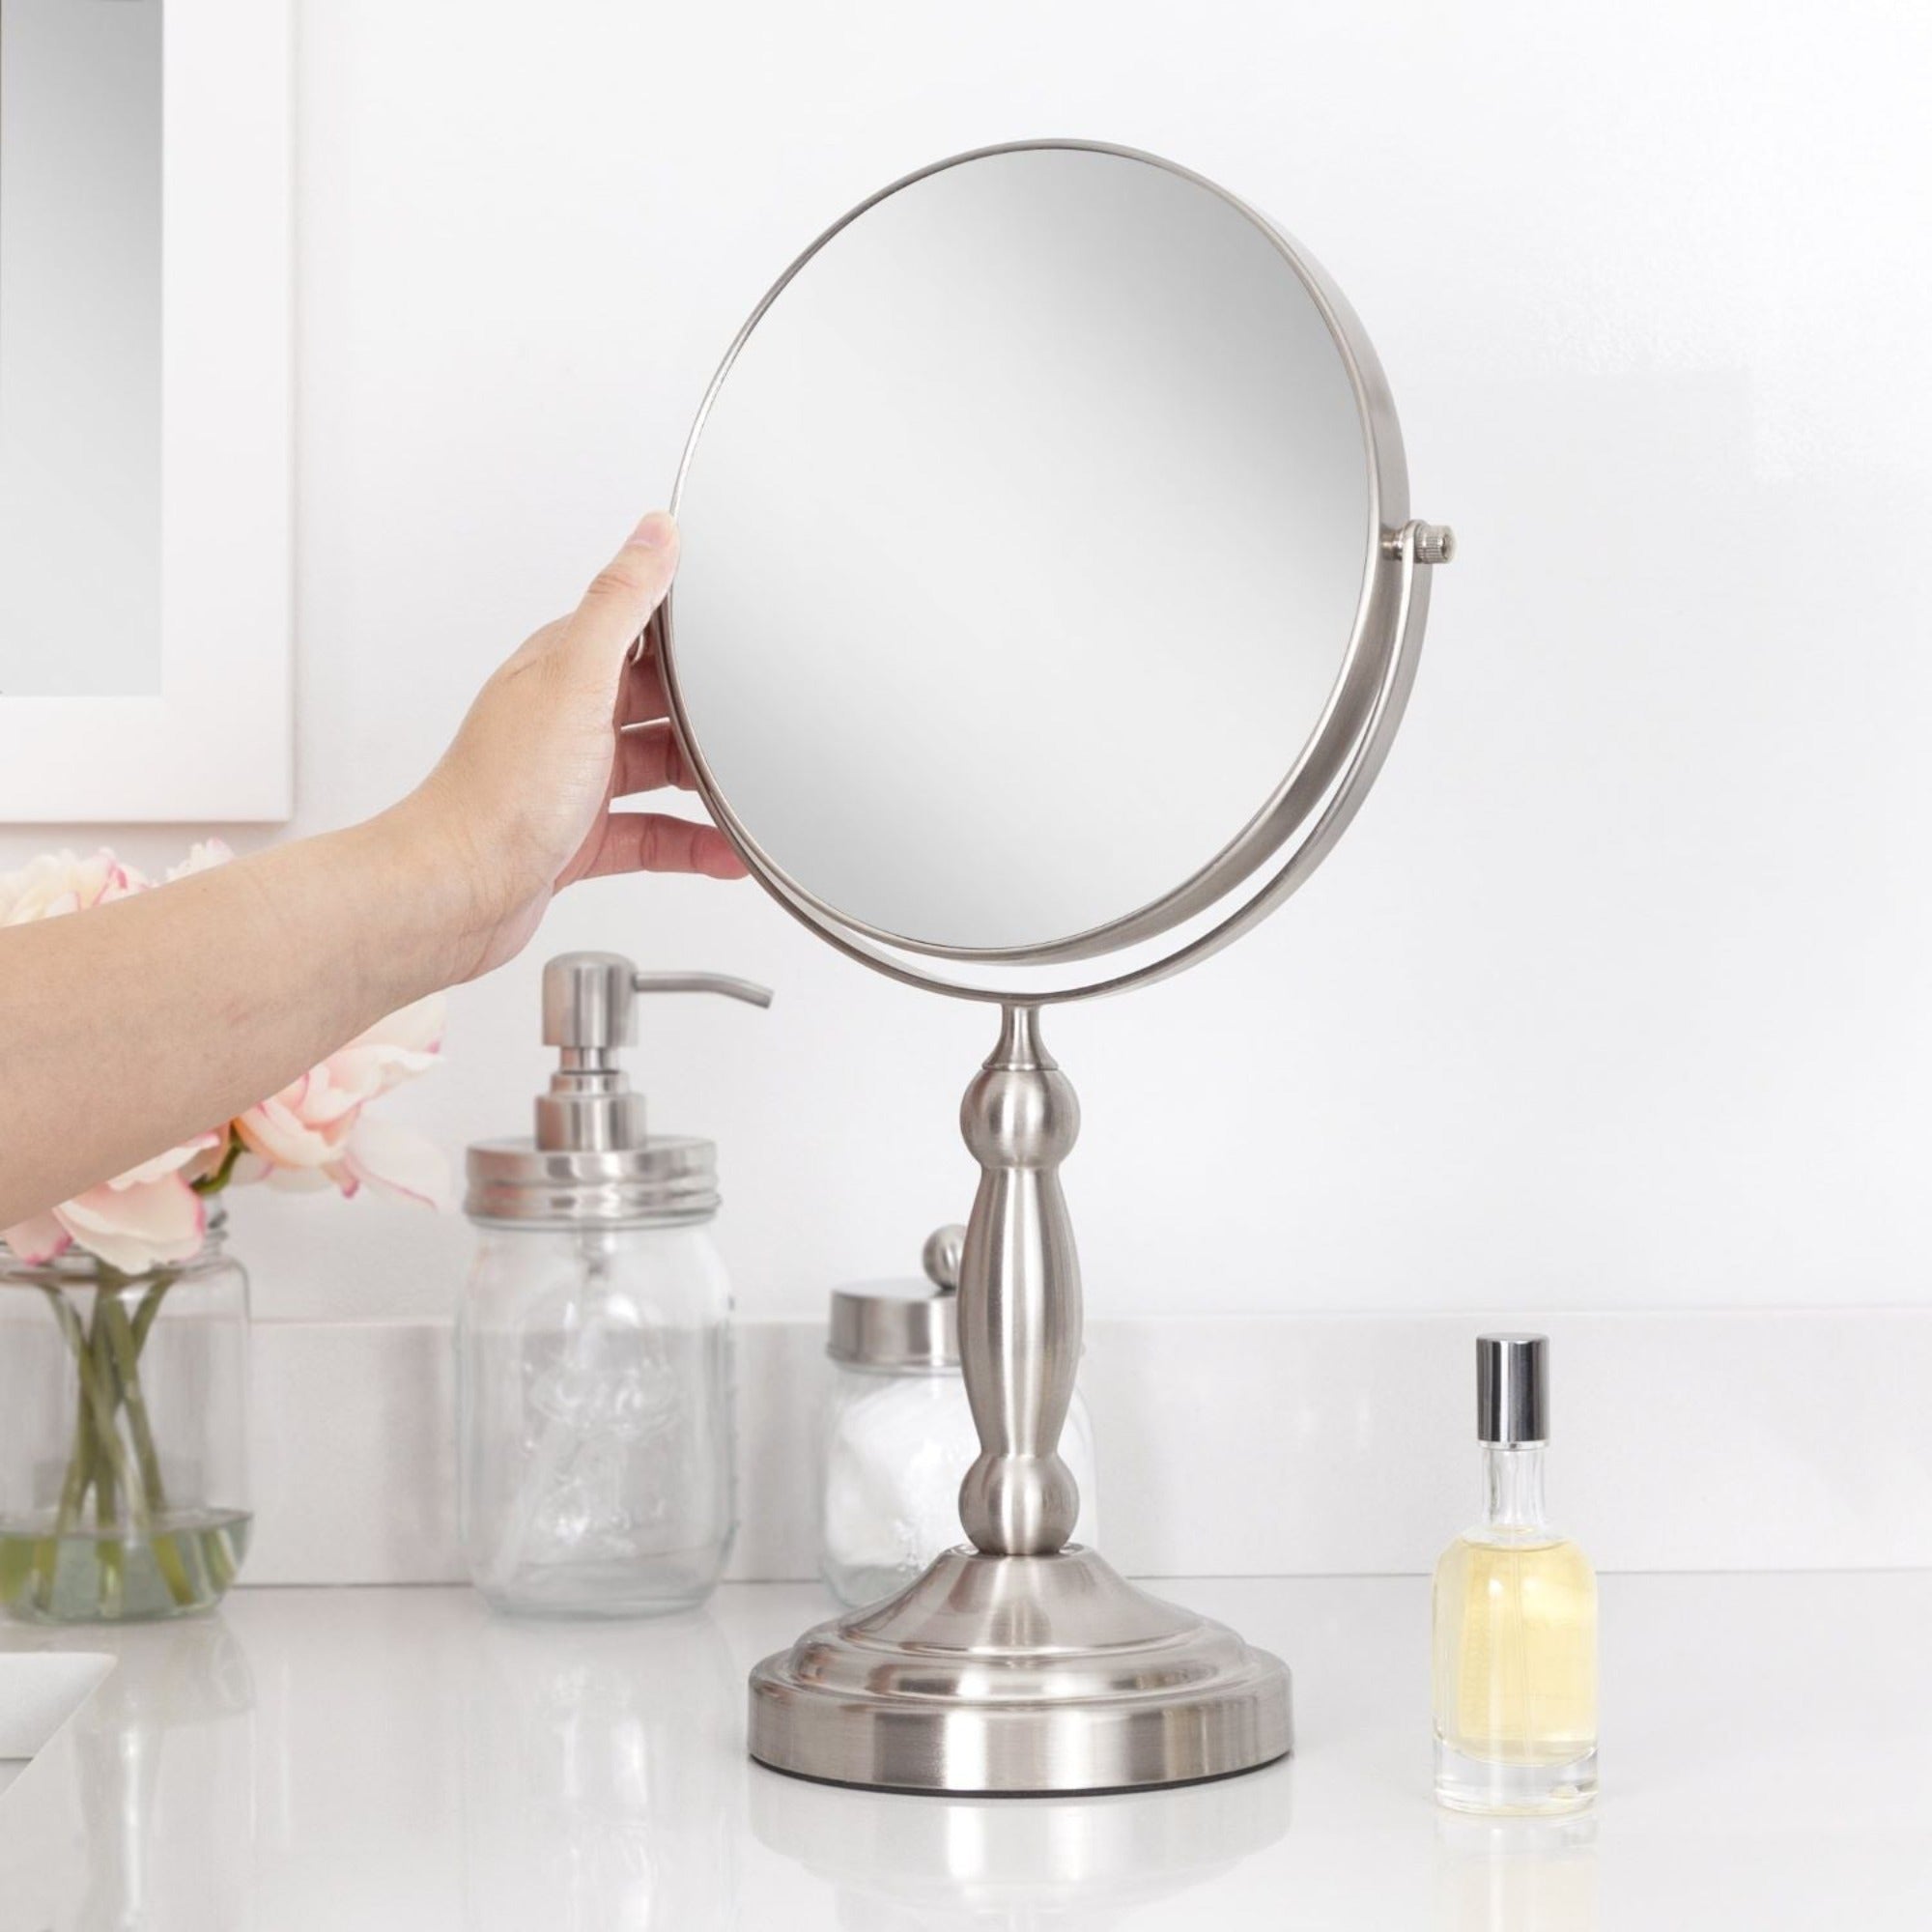 Zadro 9" Round Two-Sided Swivel Vanity Mirror, 10X/1X / SATIN NICKEL